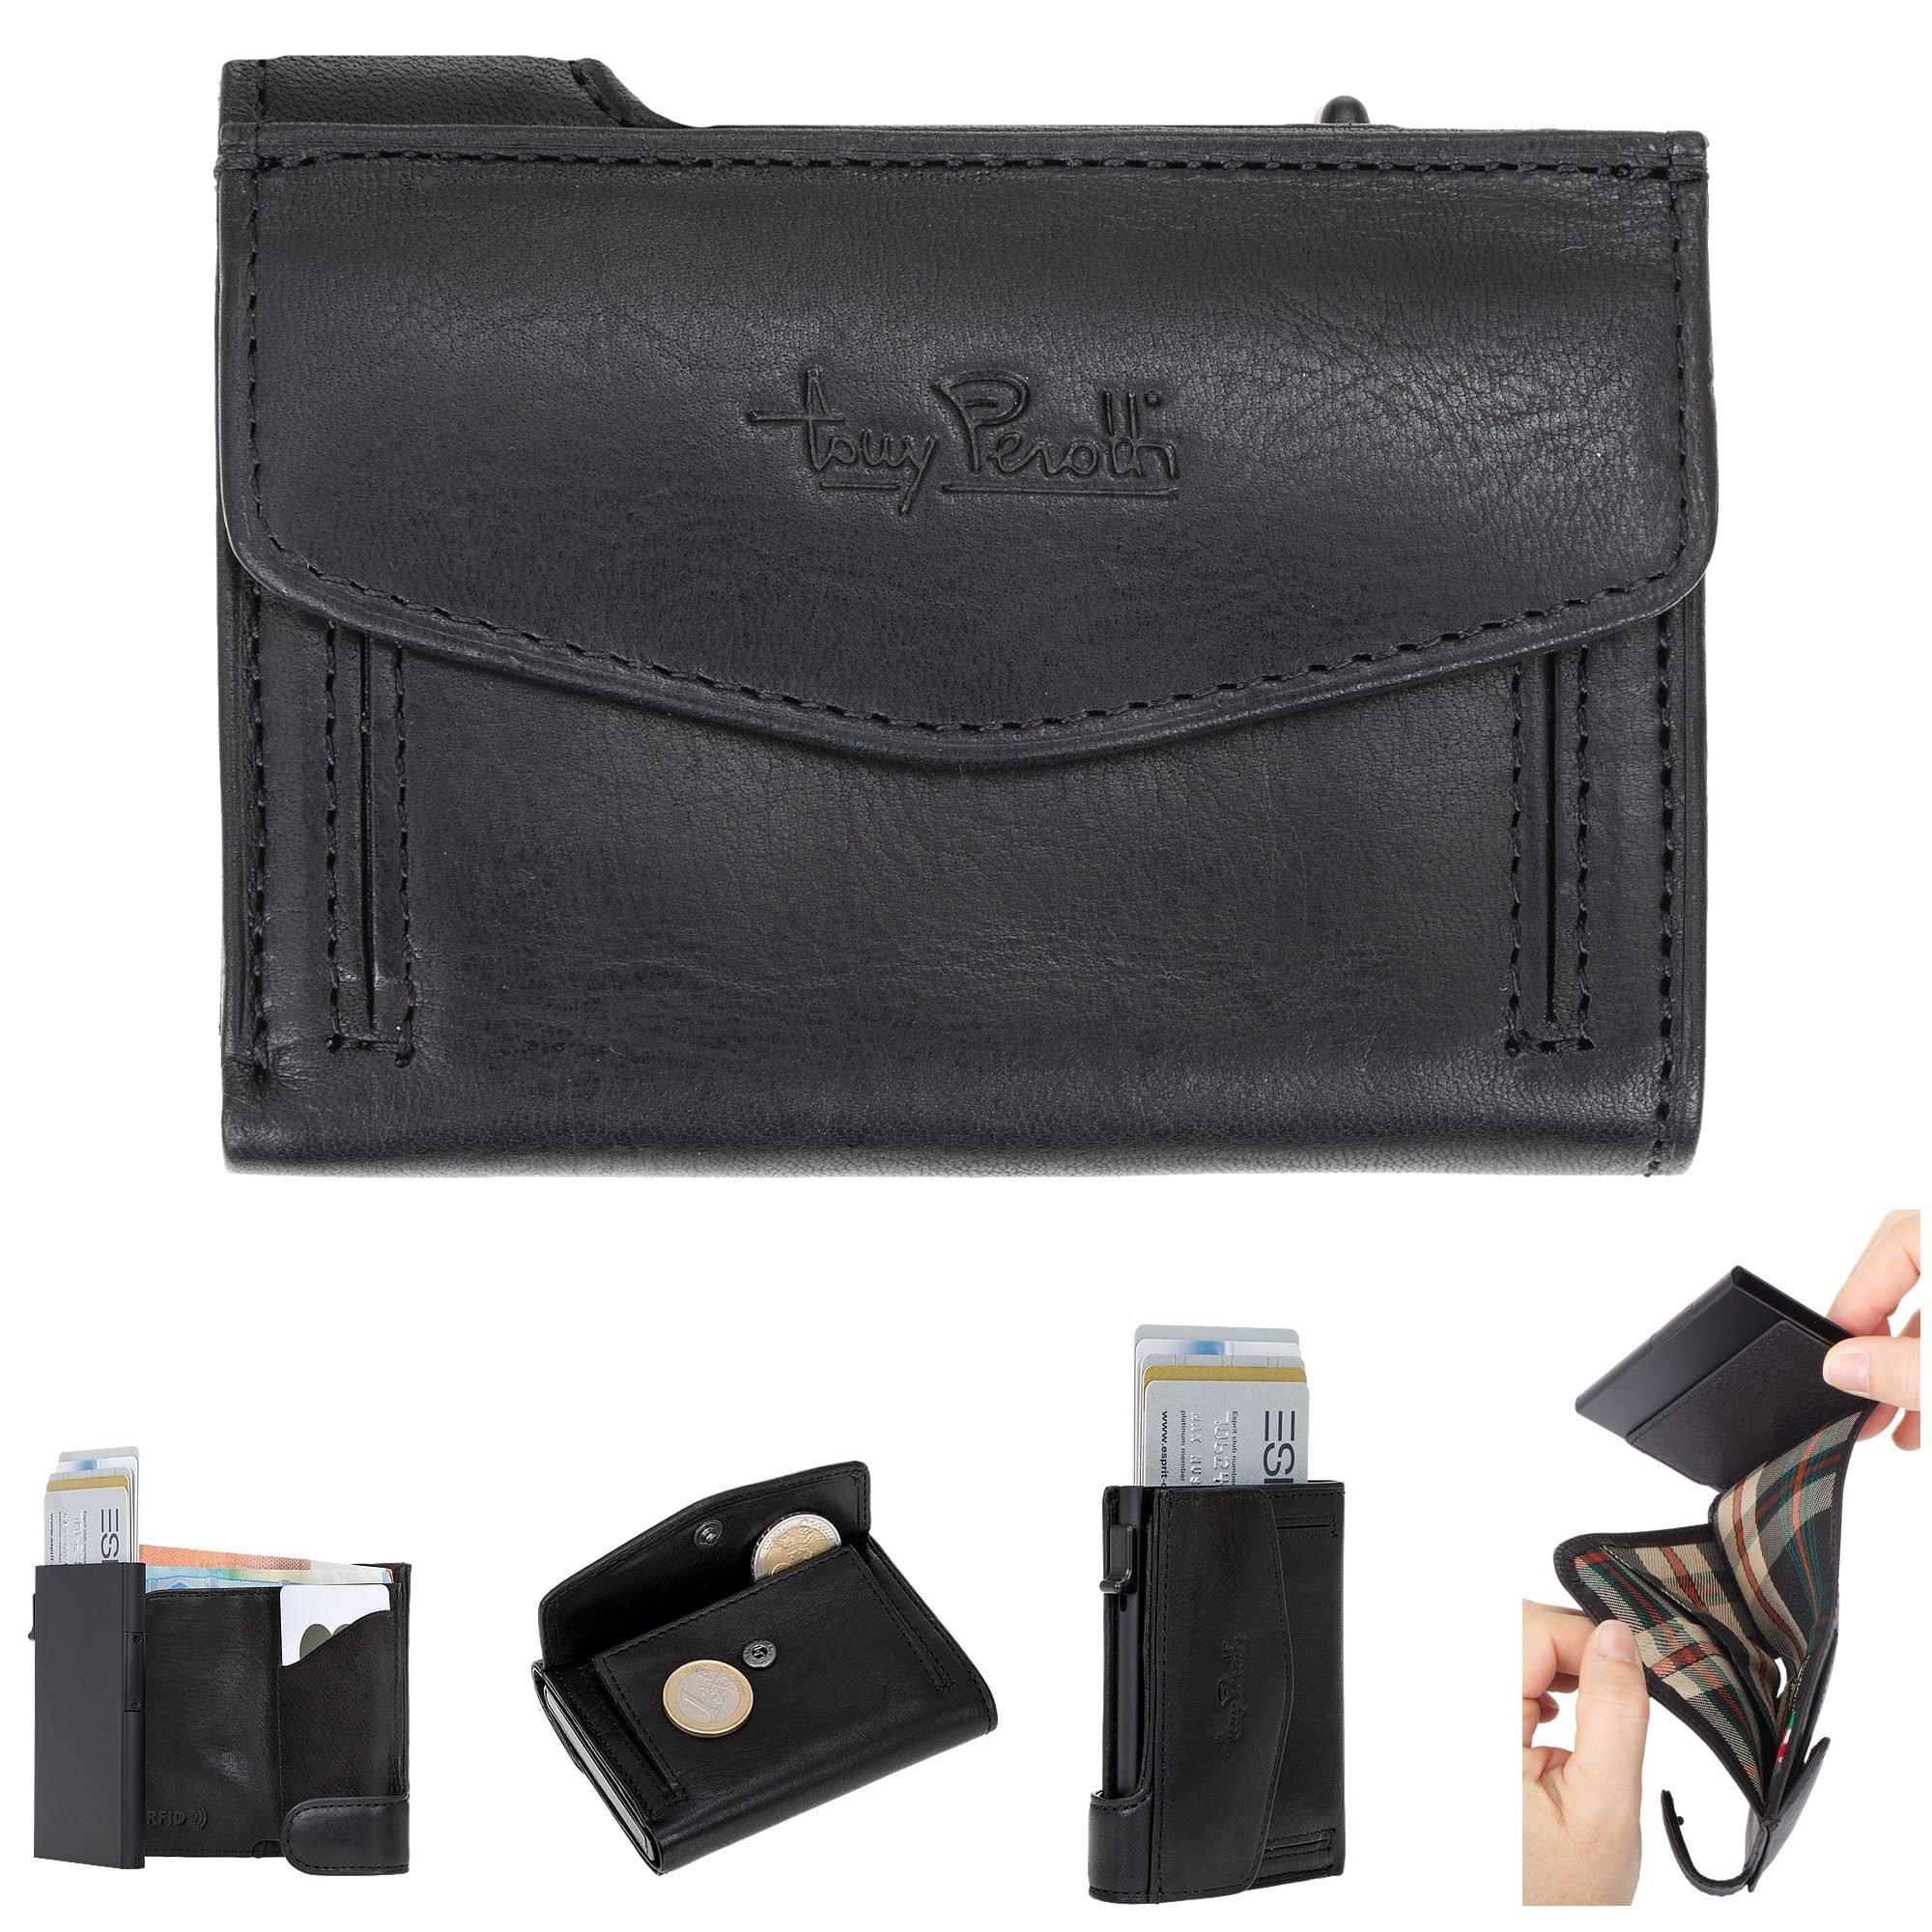 Tony Perotti Mini Geldbörse Geldbeutel Damen Herren Smart Wallet Furbo RFID Schutz, Kartenslot Container Portemonnaie Börse echtes Leder + Schlüsselbörse